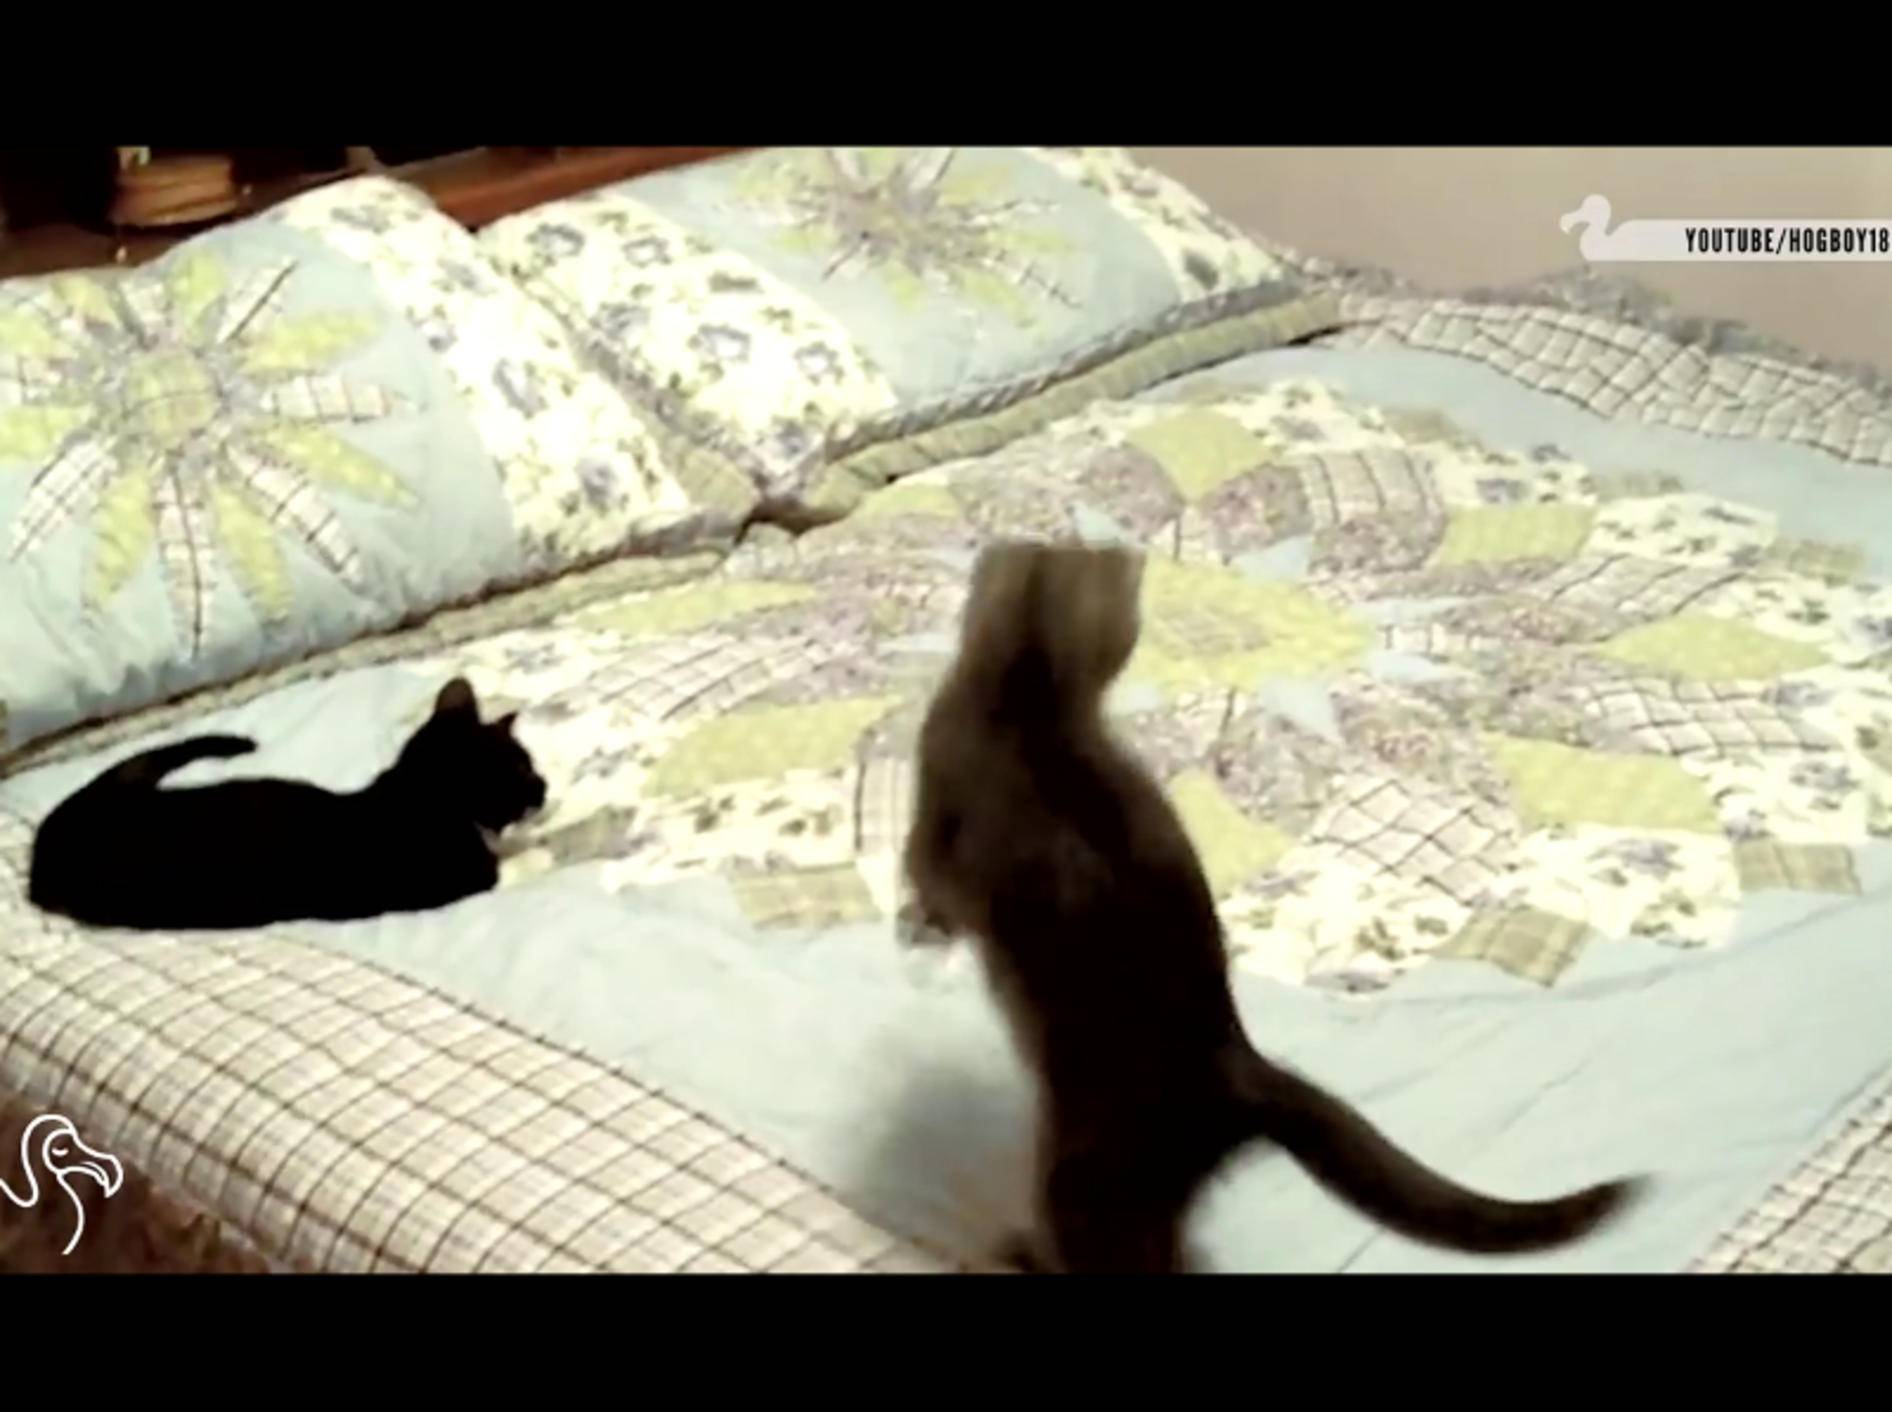 Diese Katzen glauben, dass sich etwas Lebendiges unter der Bettdecke versteckt – YouTube / The Dodo